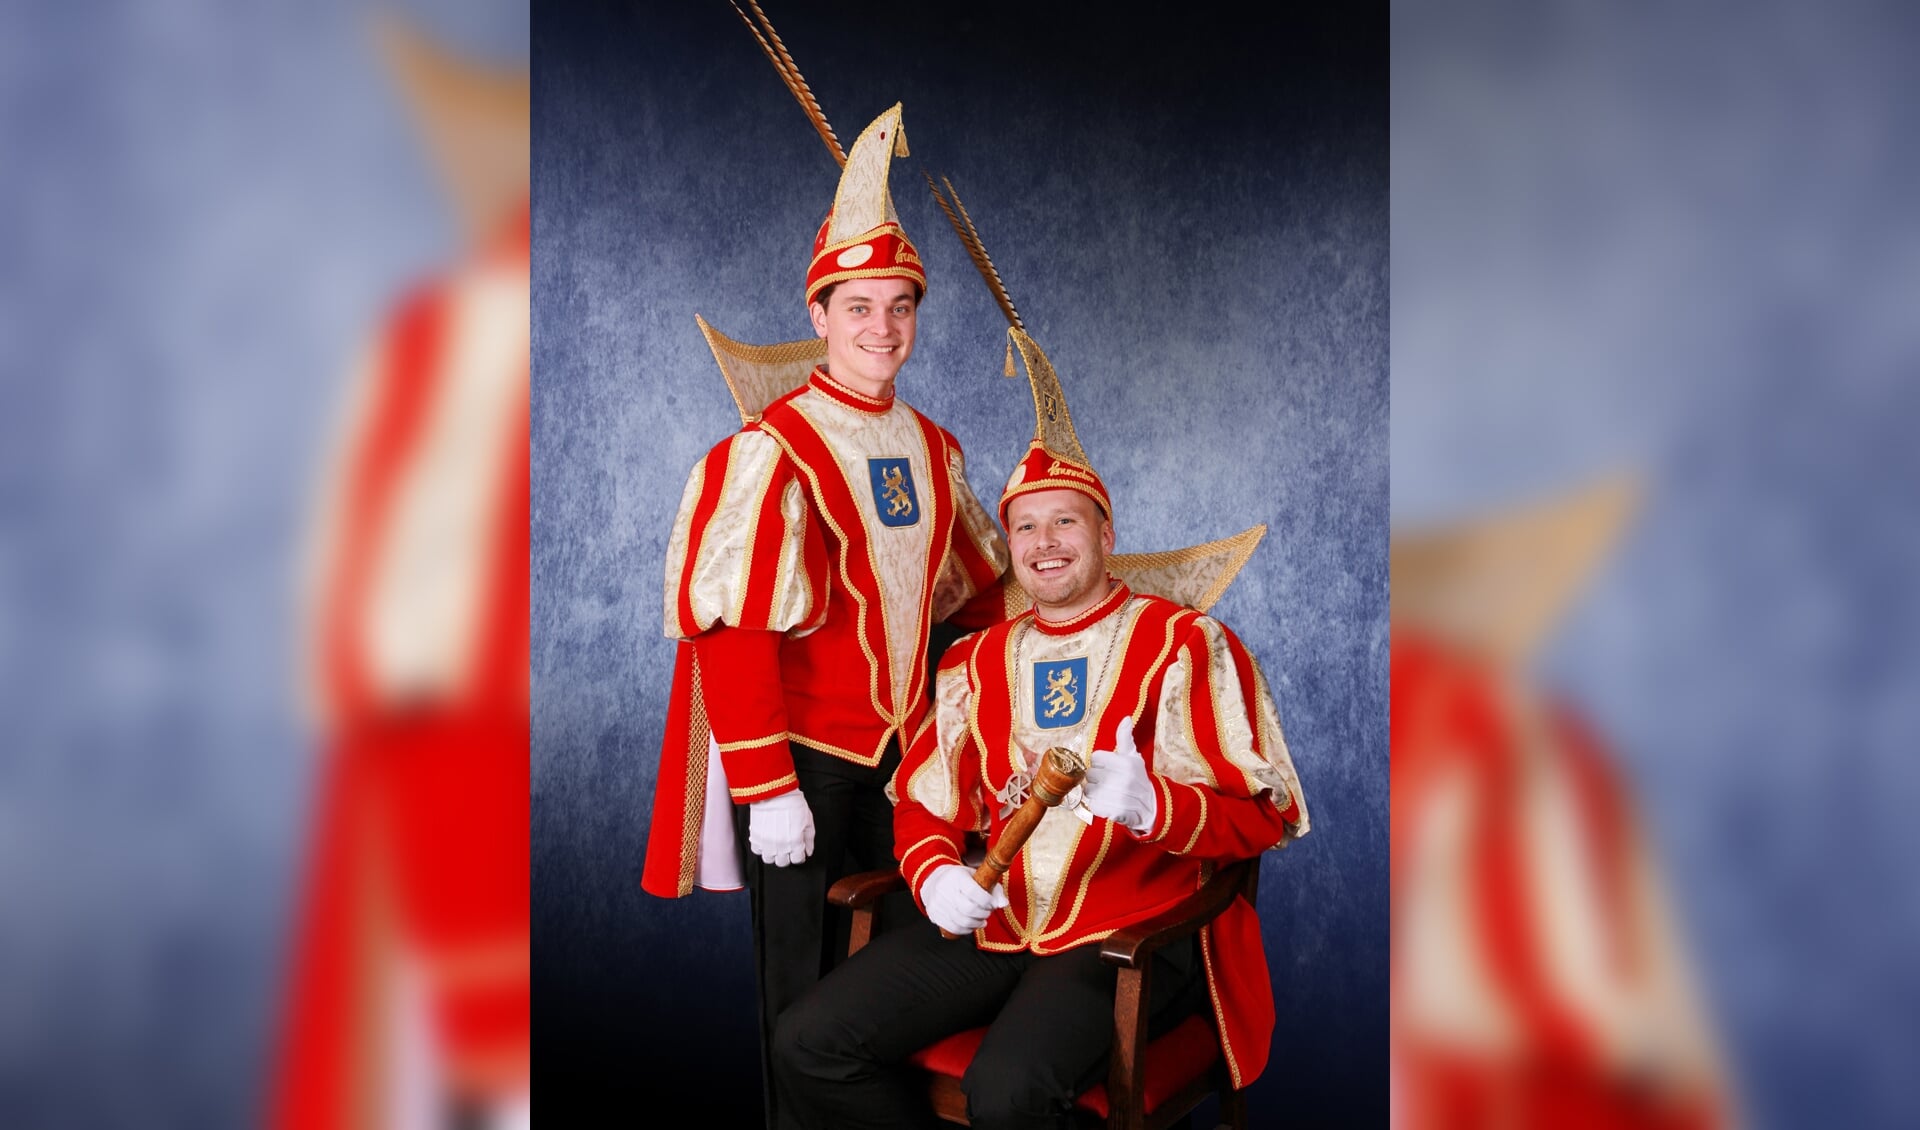 Zittend prins Ivo I en staand adjudant Mark van CV De Knunnekes tijdens de carnavalscampagne 2018-2019. Foto: PR CV De Knunnekes